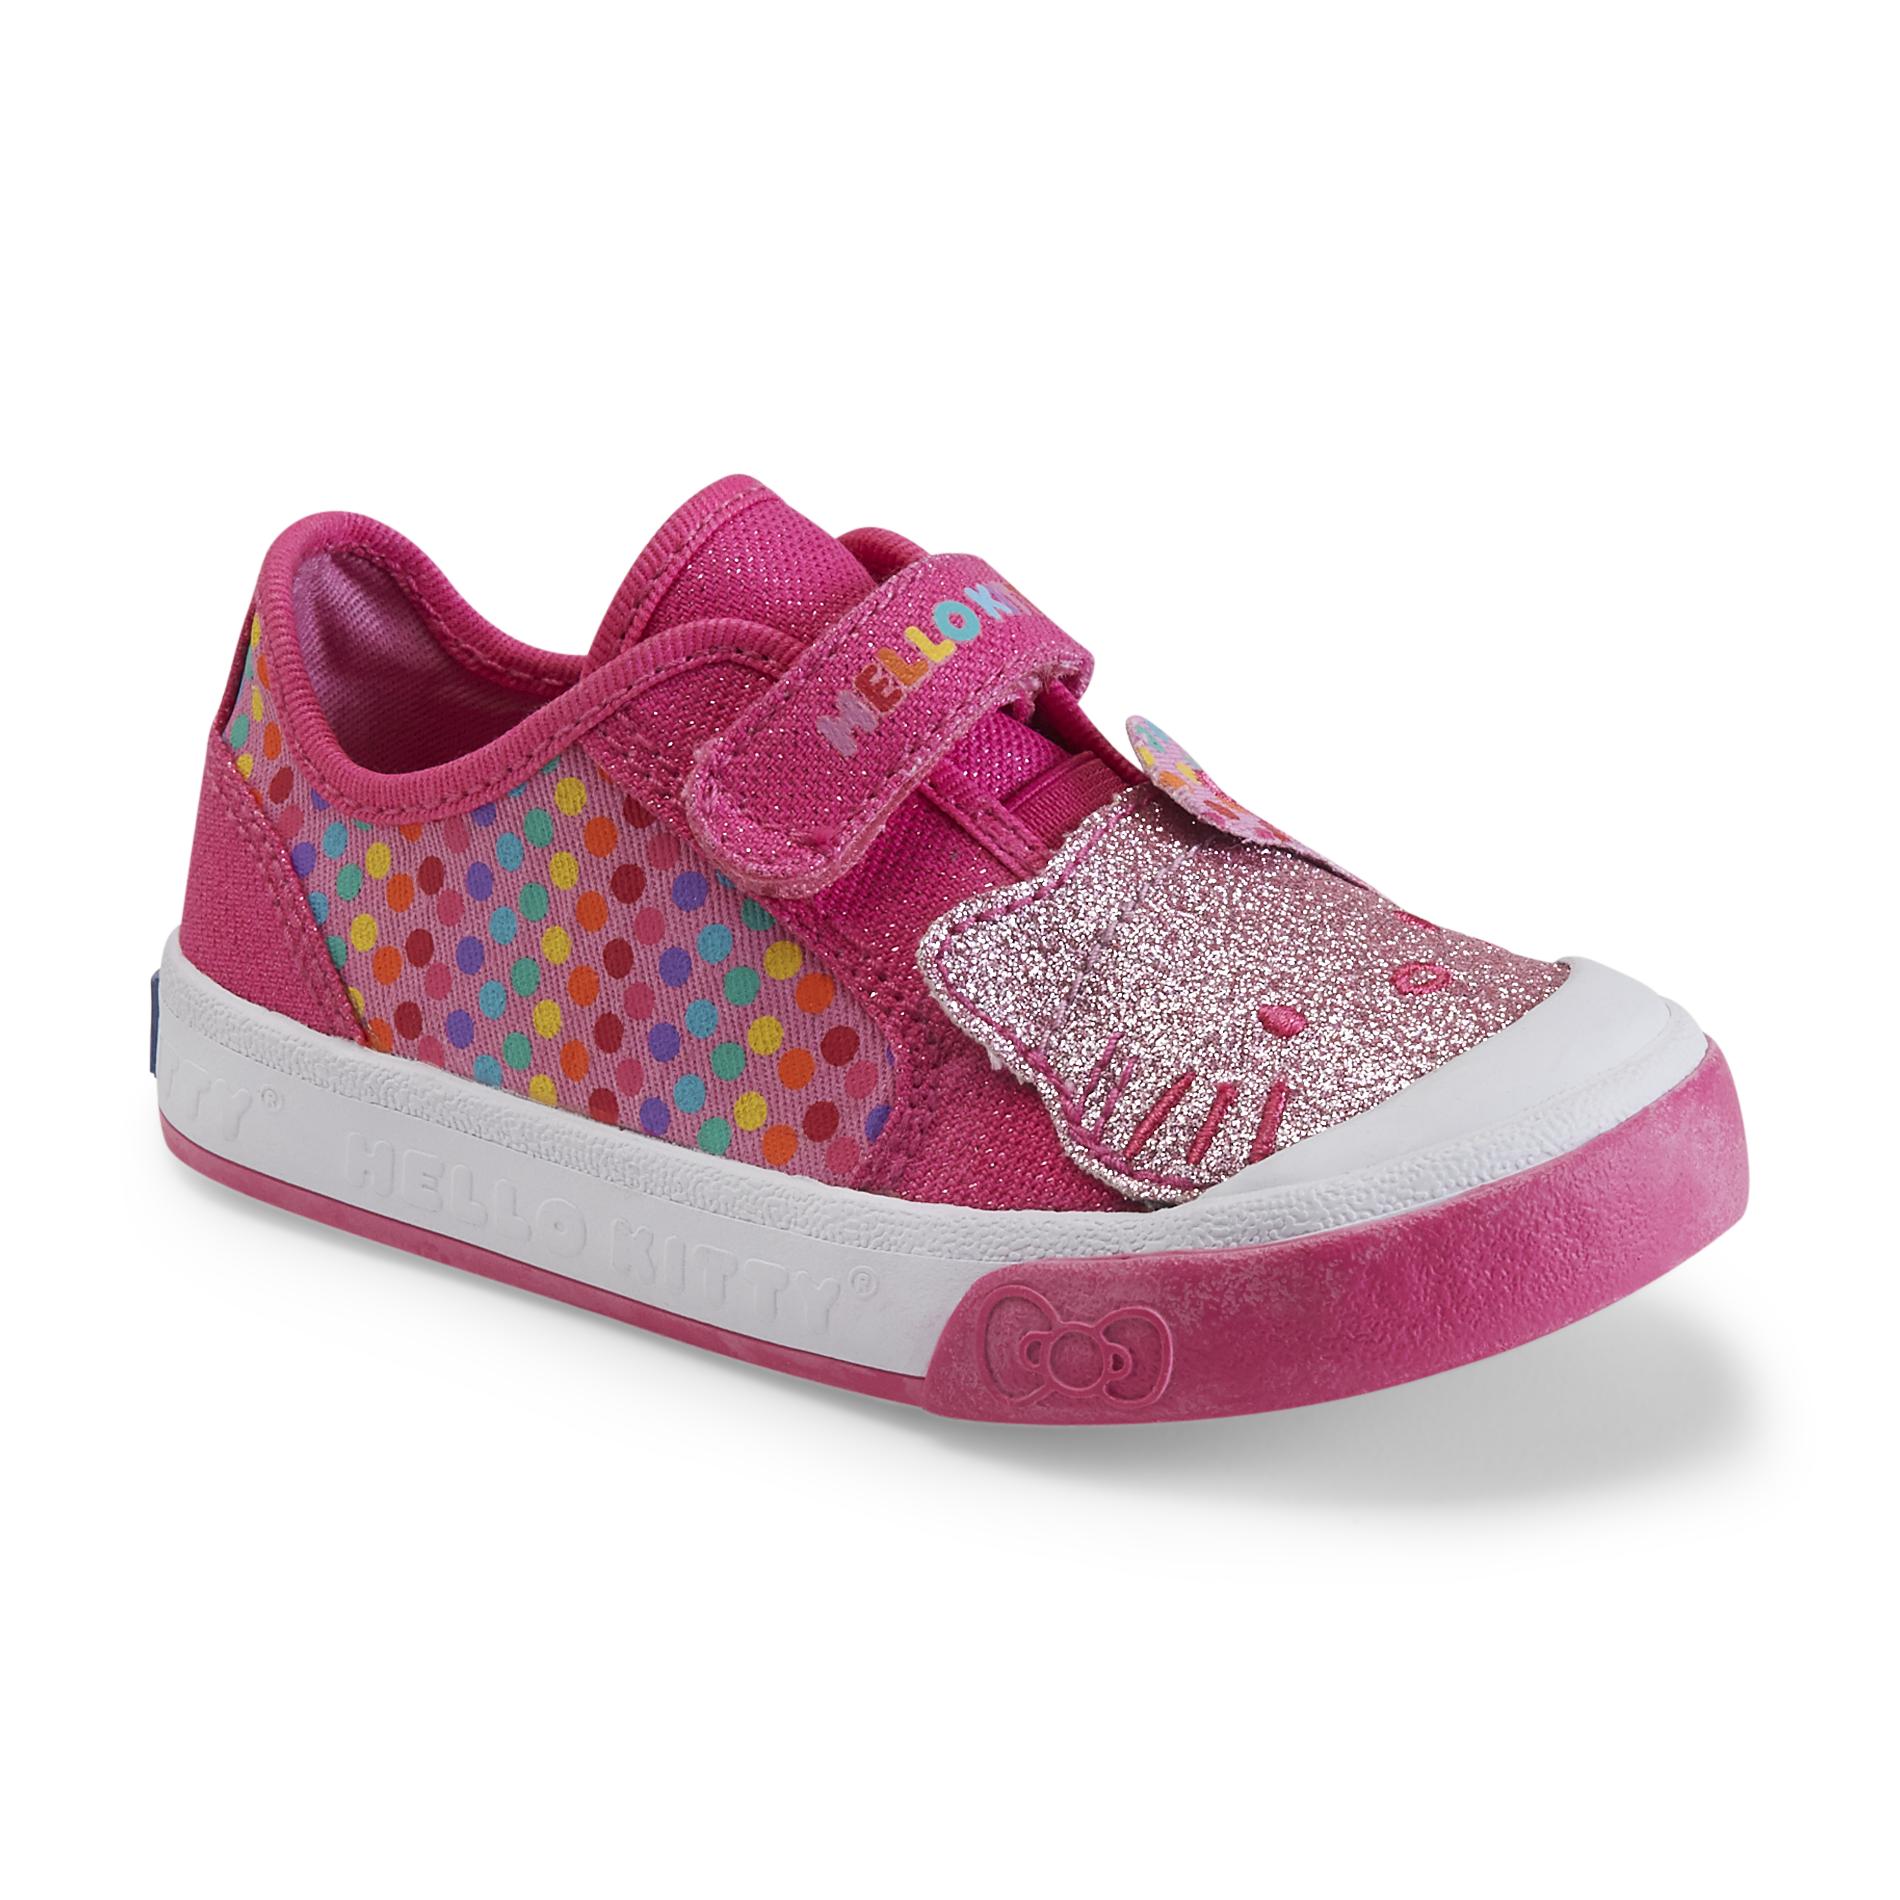 Keds Toddler Girl's Glittery-Kitty Pink/Multicolor/Polka-Dot Shoe